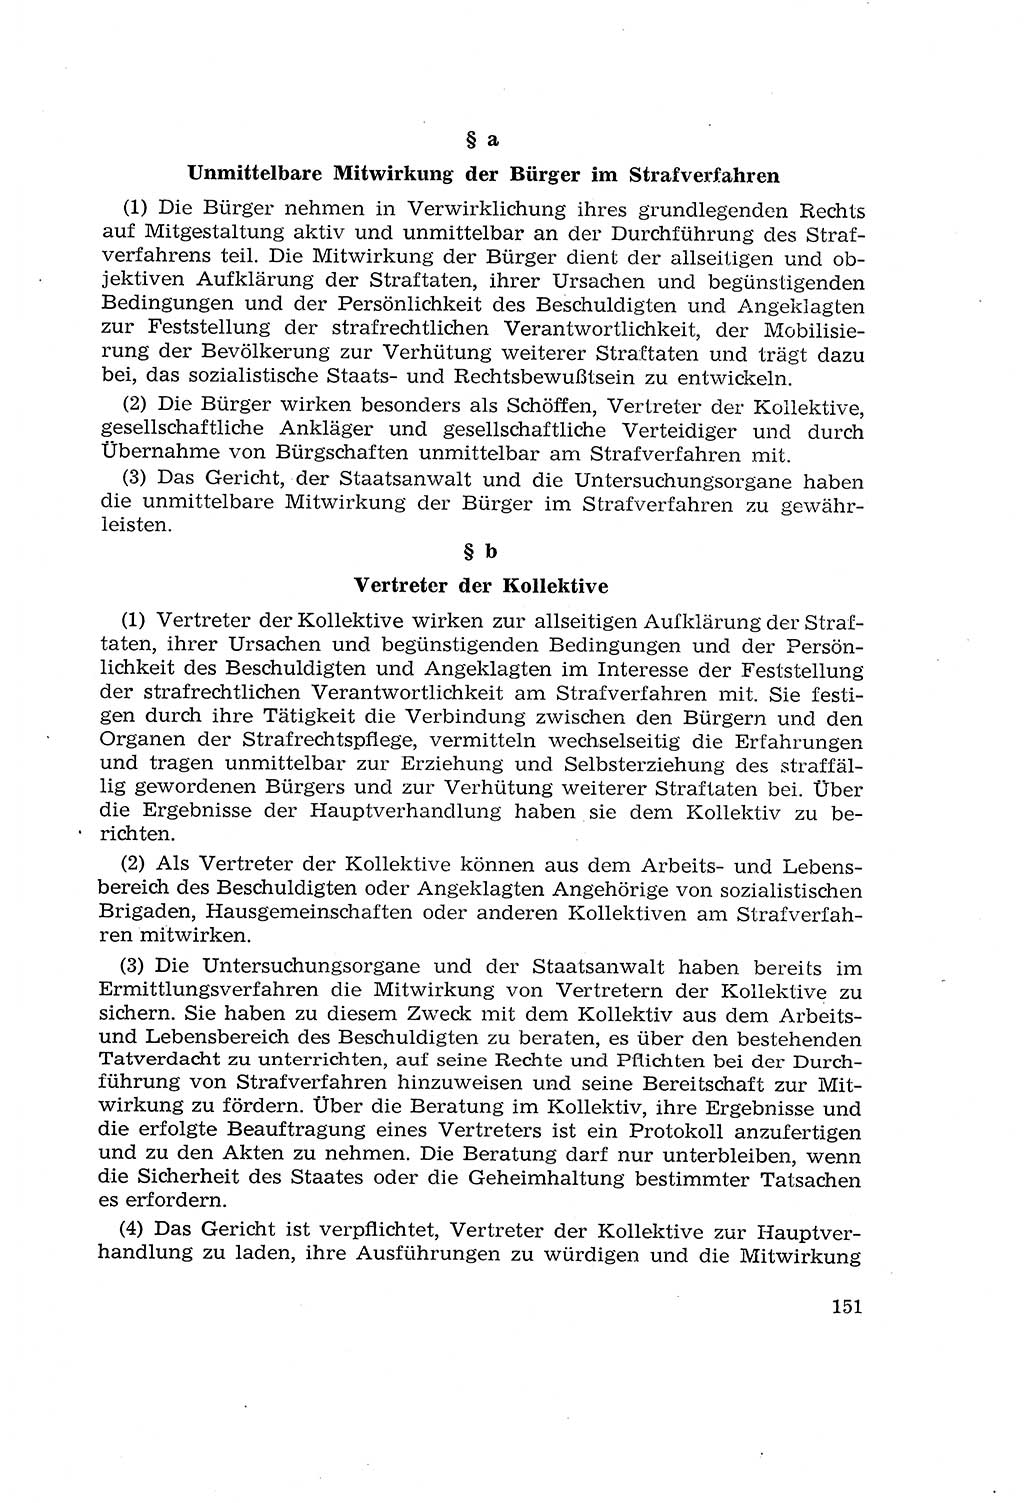 Die Mitwirkung der Werktätigen am Strafverfahren [Deutsche Demokratische Republik (DDR)] 1966, Seite 151 (Mitw. Str.-Verf. DDR 1966, S. 151)